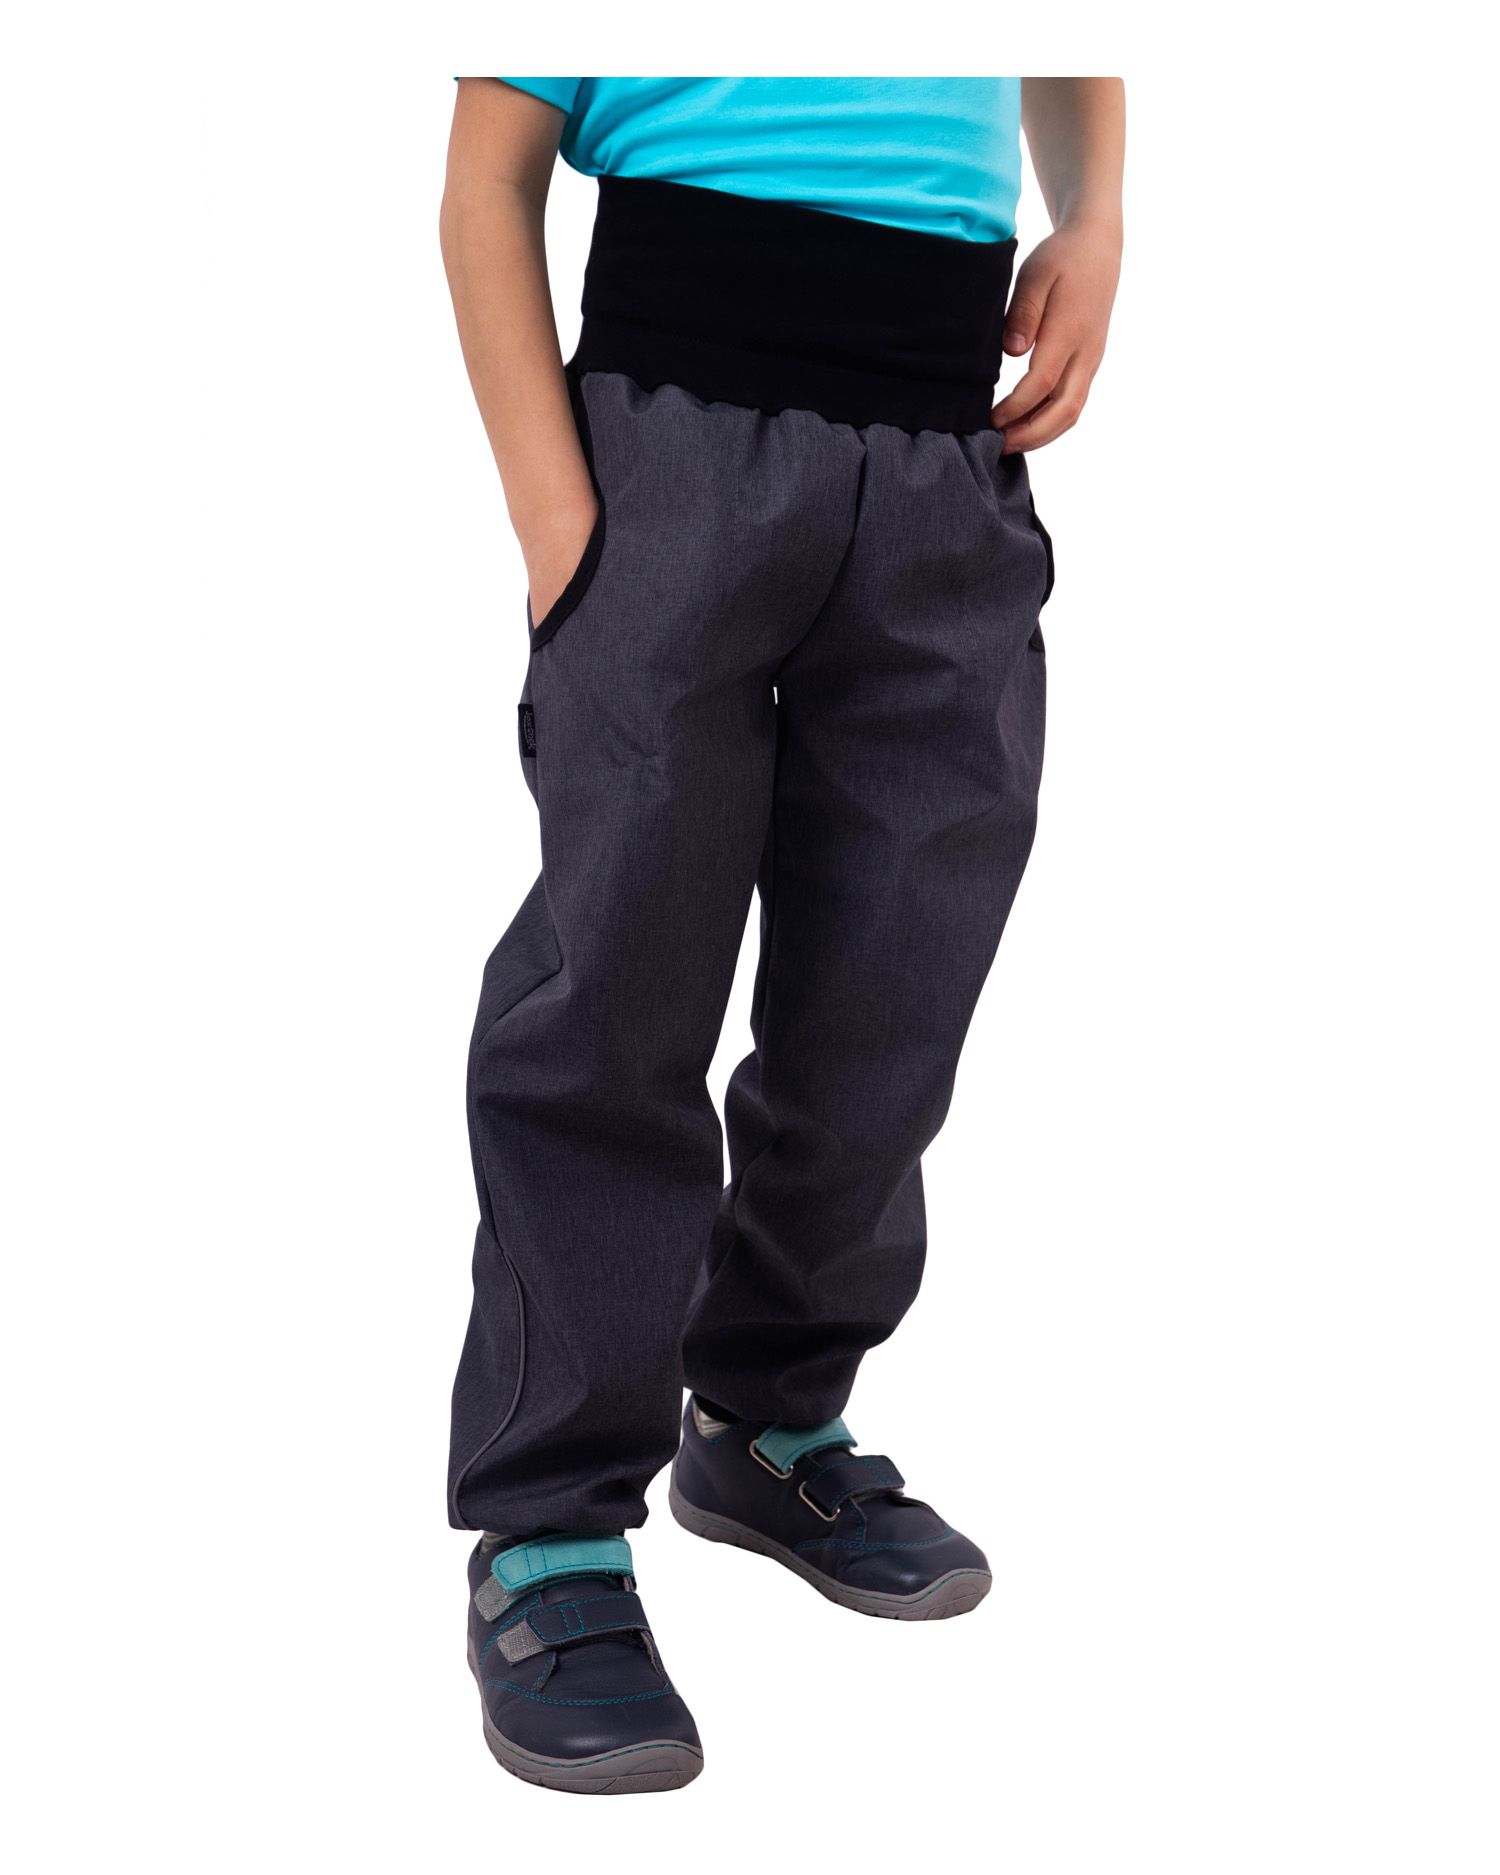 Jarné / letné detské softshellové nohavice, sivý melír